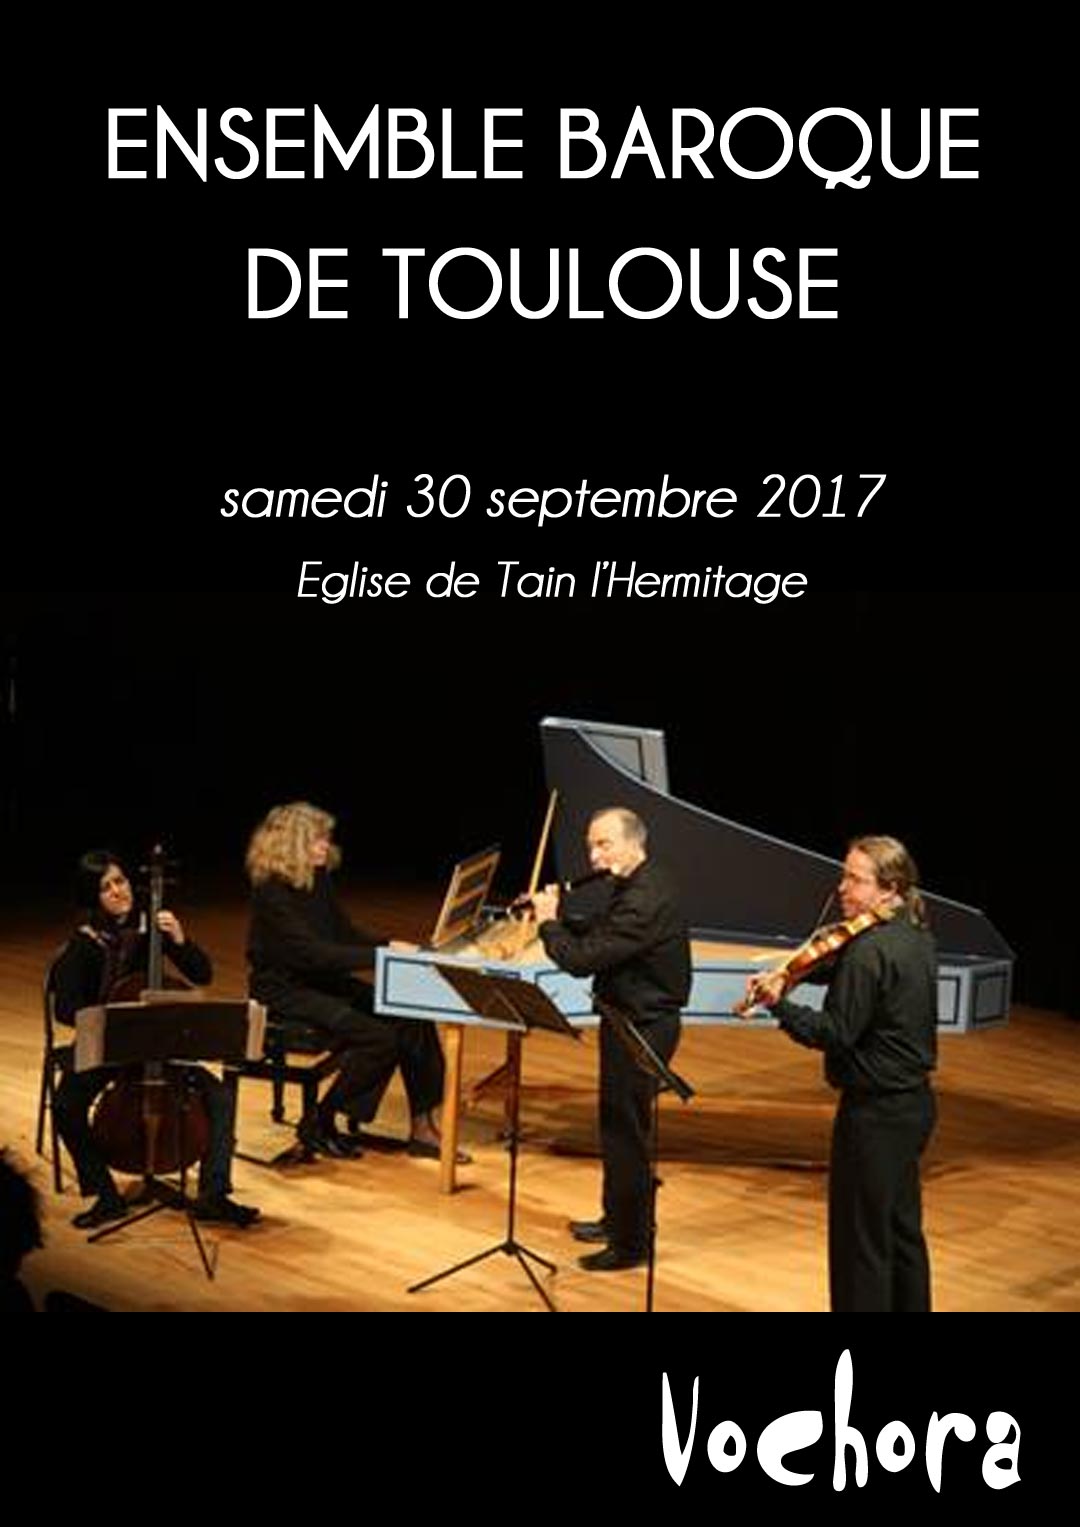 Ensemble Baroque de Toulouse. Programmation Vochora. samedi 30 septembre 2017 à 18h - église de Tain l'Hermitage.